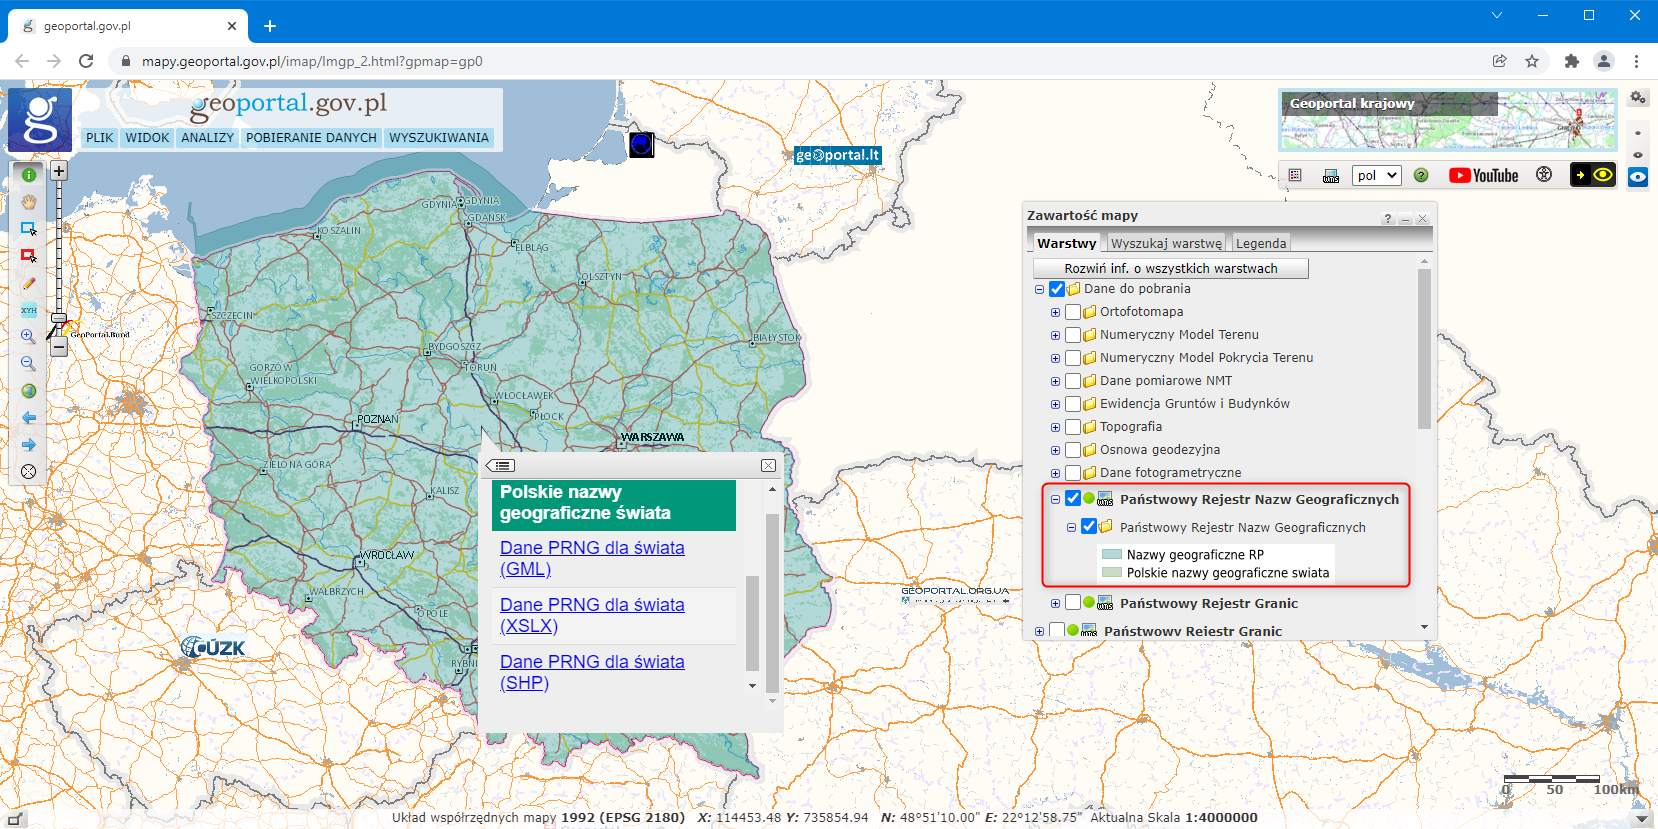 ilustracja przedstawiająca zrzut ekranu ze strony www.geoportal.gov.pl z listą warstw i identyfikacją watstw wraz z listą wyeksportowanych plików z bazy PRNG do pobrania